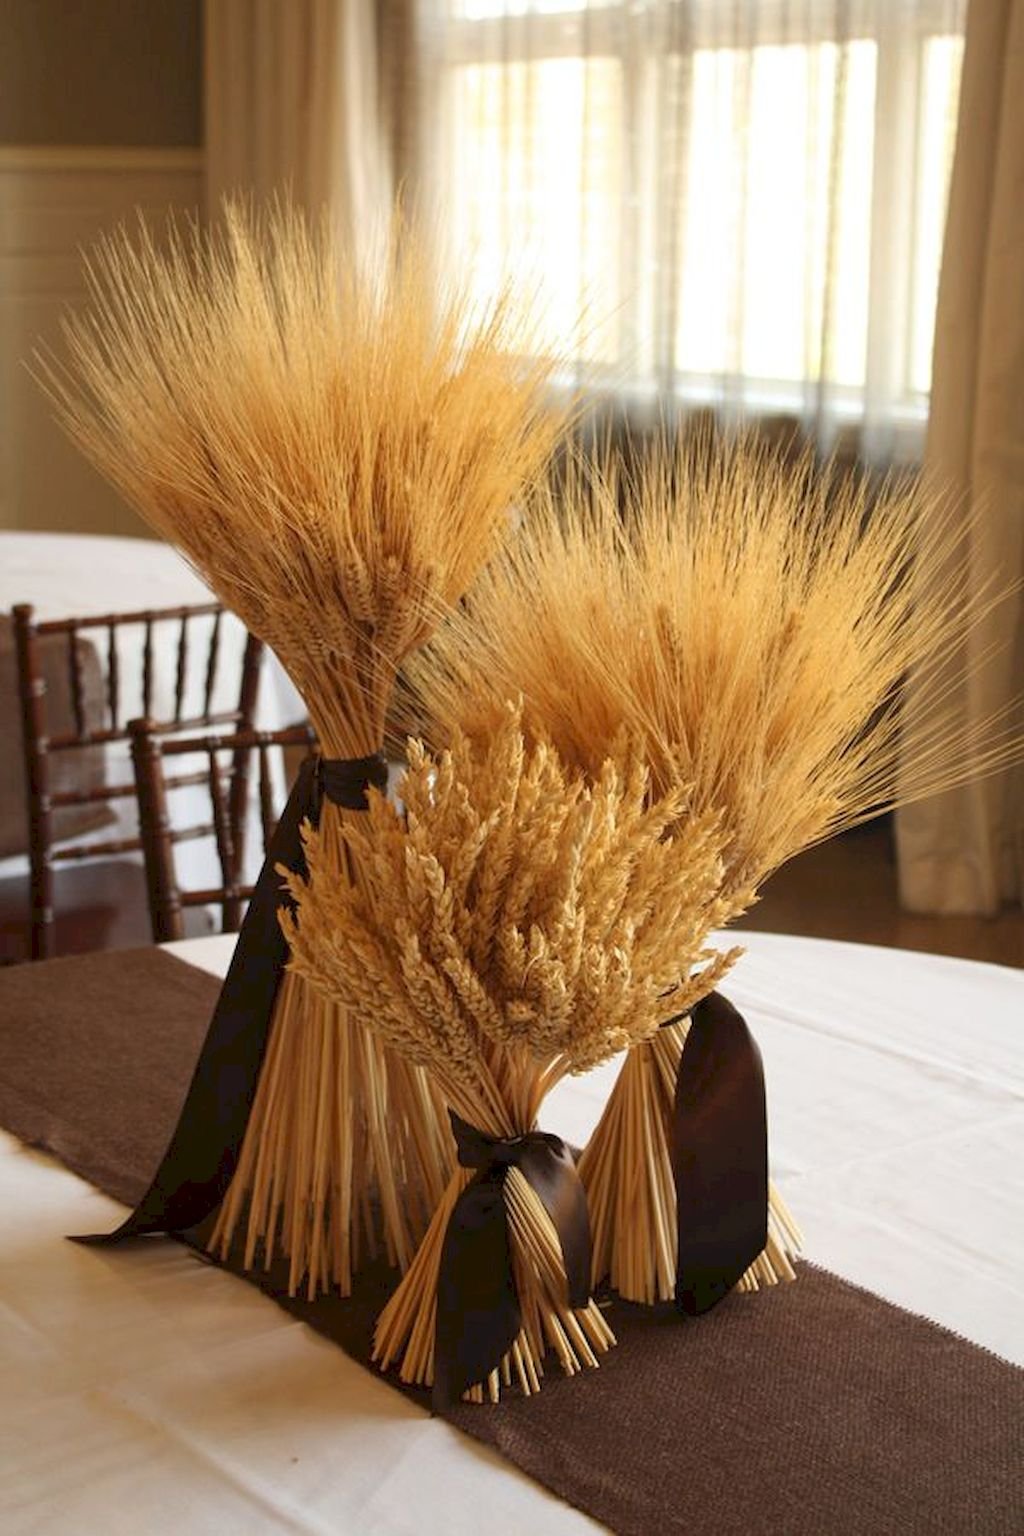 Снопик пшеницы